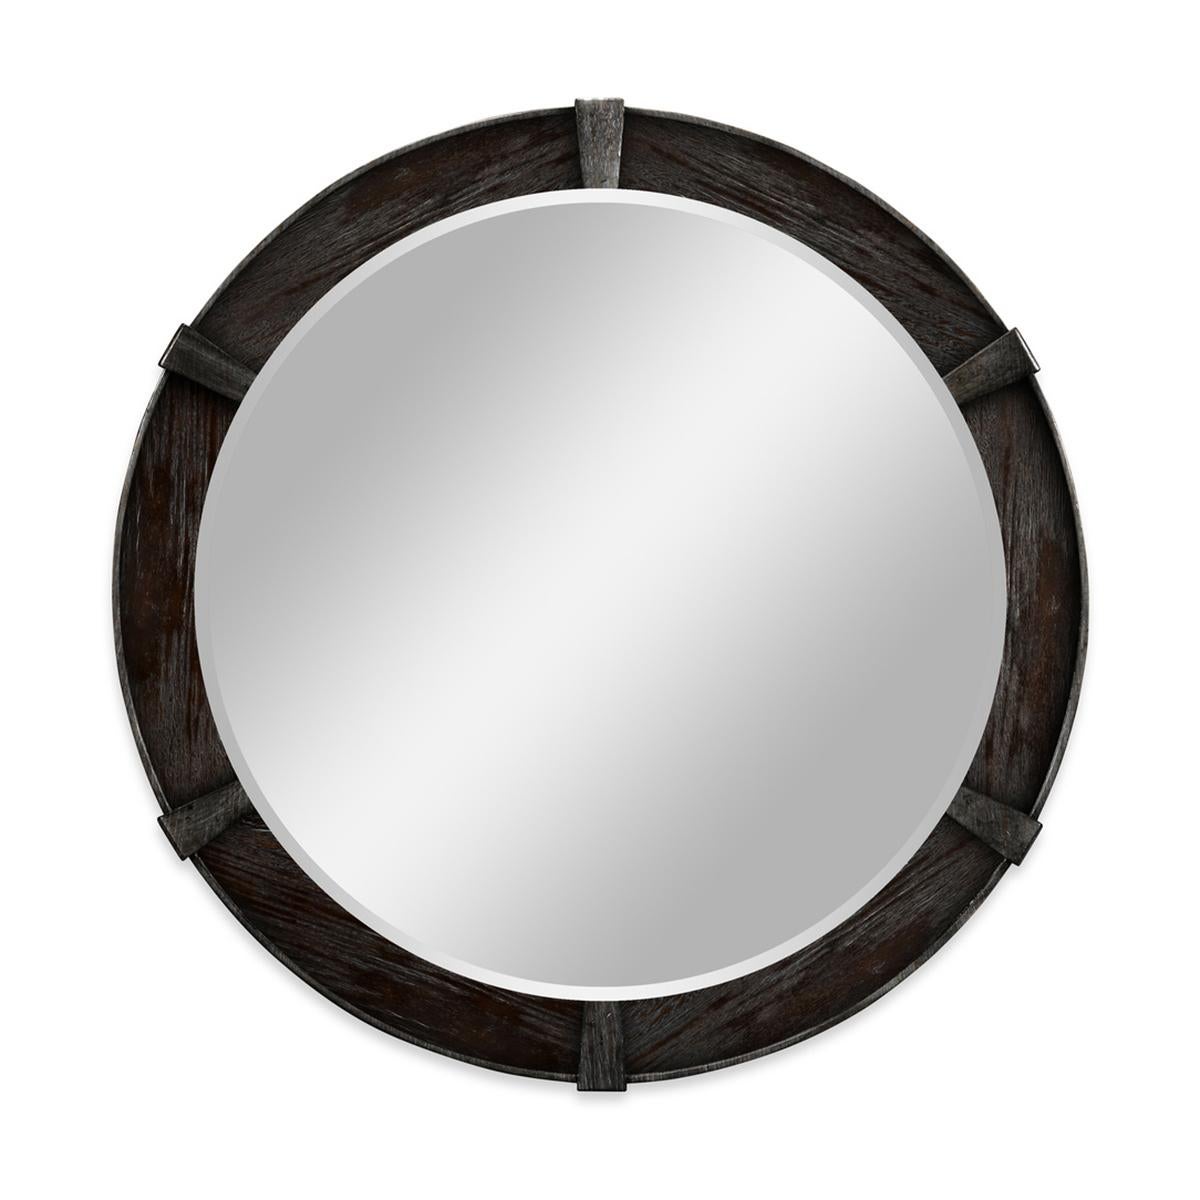 Miroir rond moderne Dark AM Contemporary, le petit miroir circulaire en finition sombre avec des détails contemporains sculptés en relief et une glace biseautée unie.

Dimensions : 35 7/8